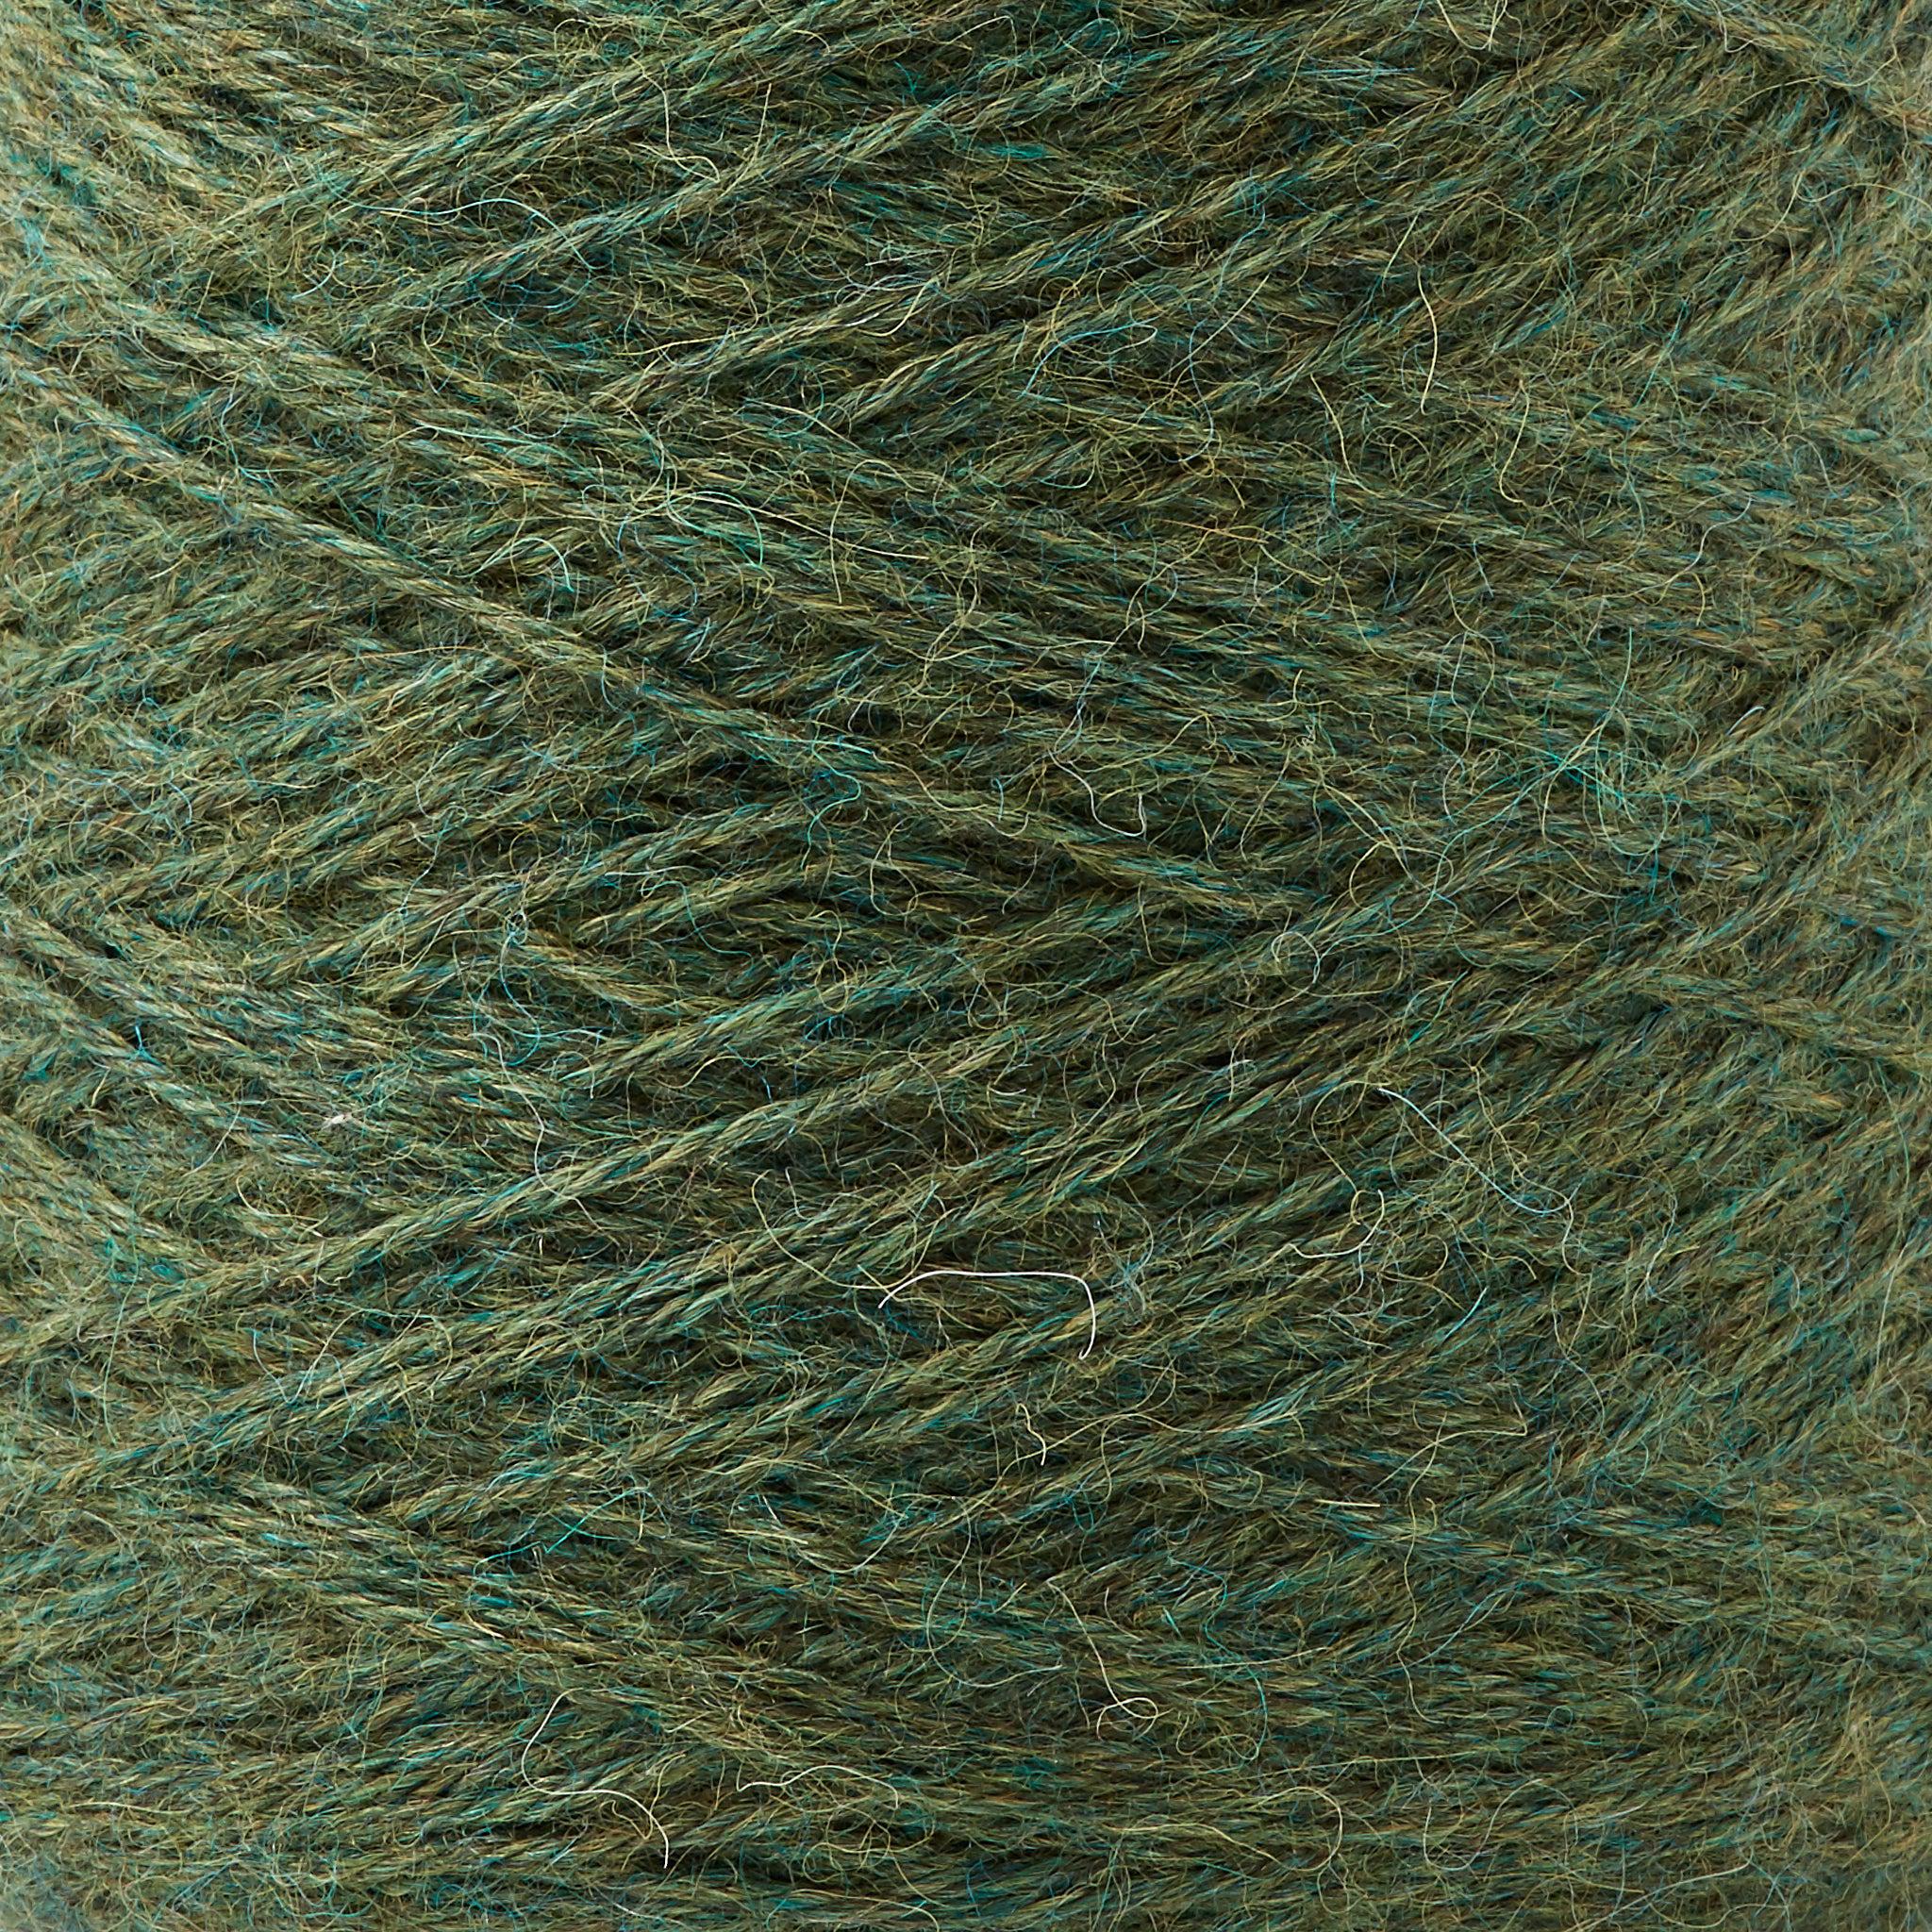 Ode Alpaca Weaving Yarn ~ Basil - Gist Yarn